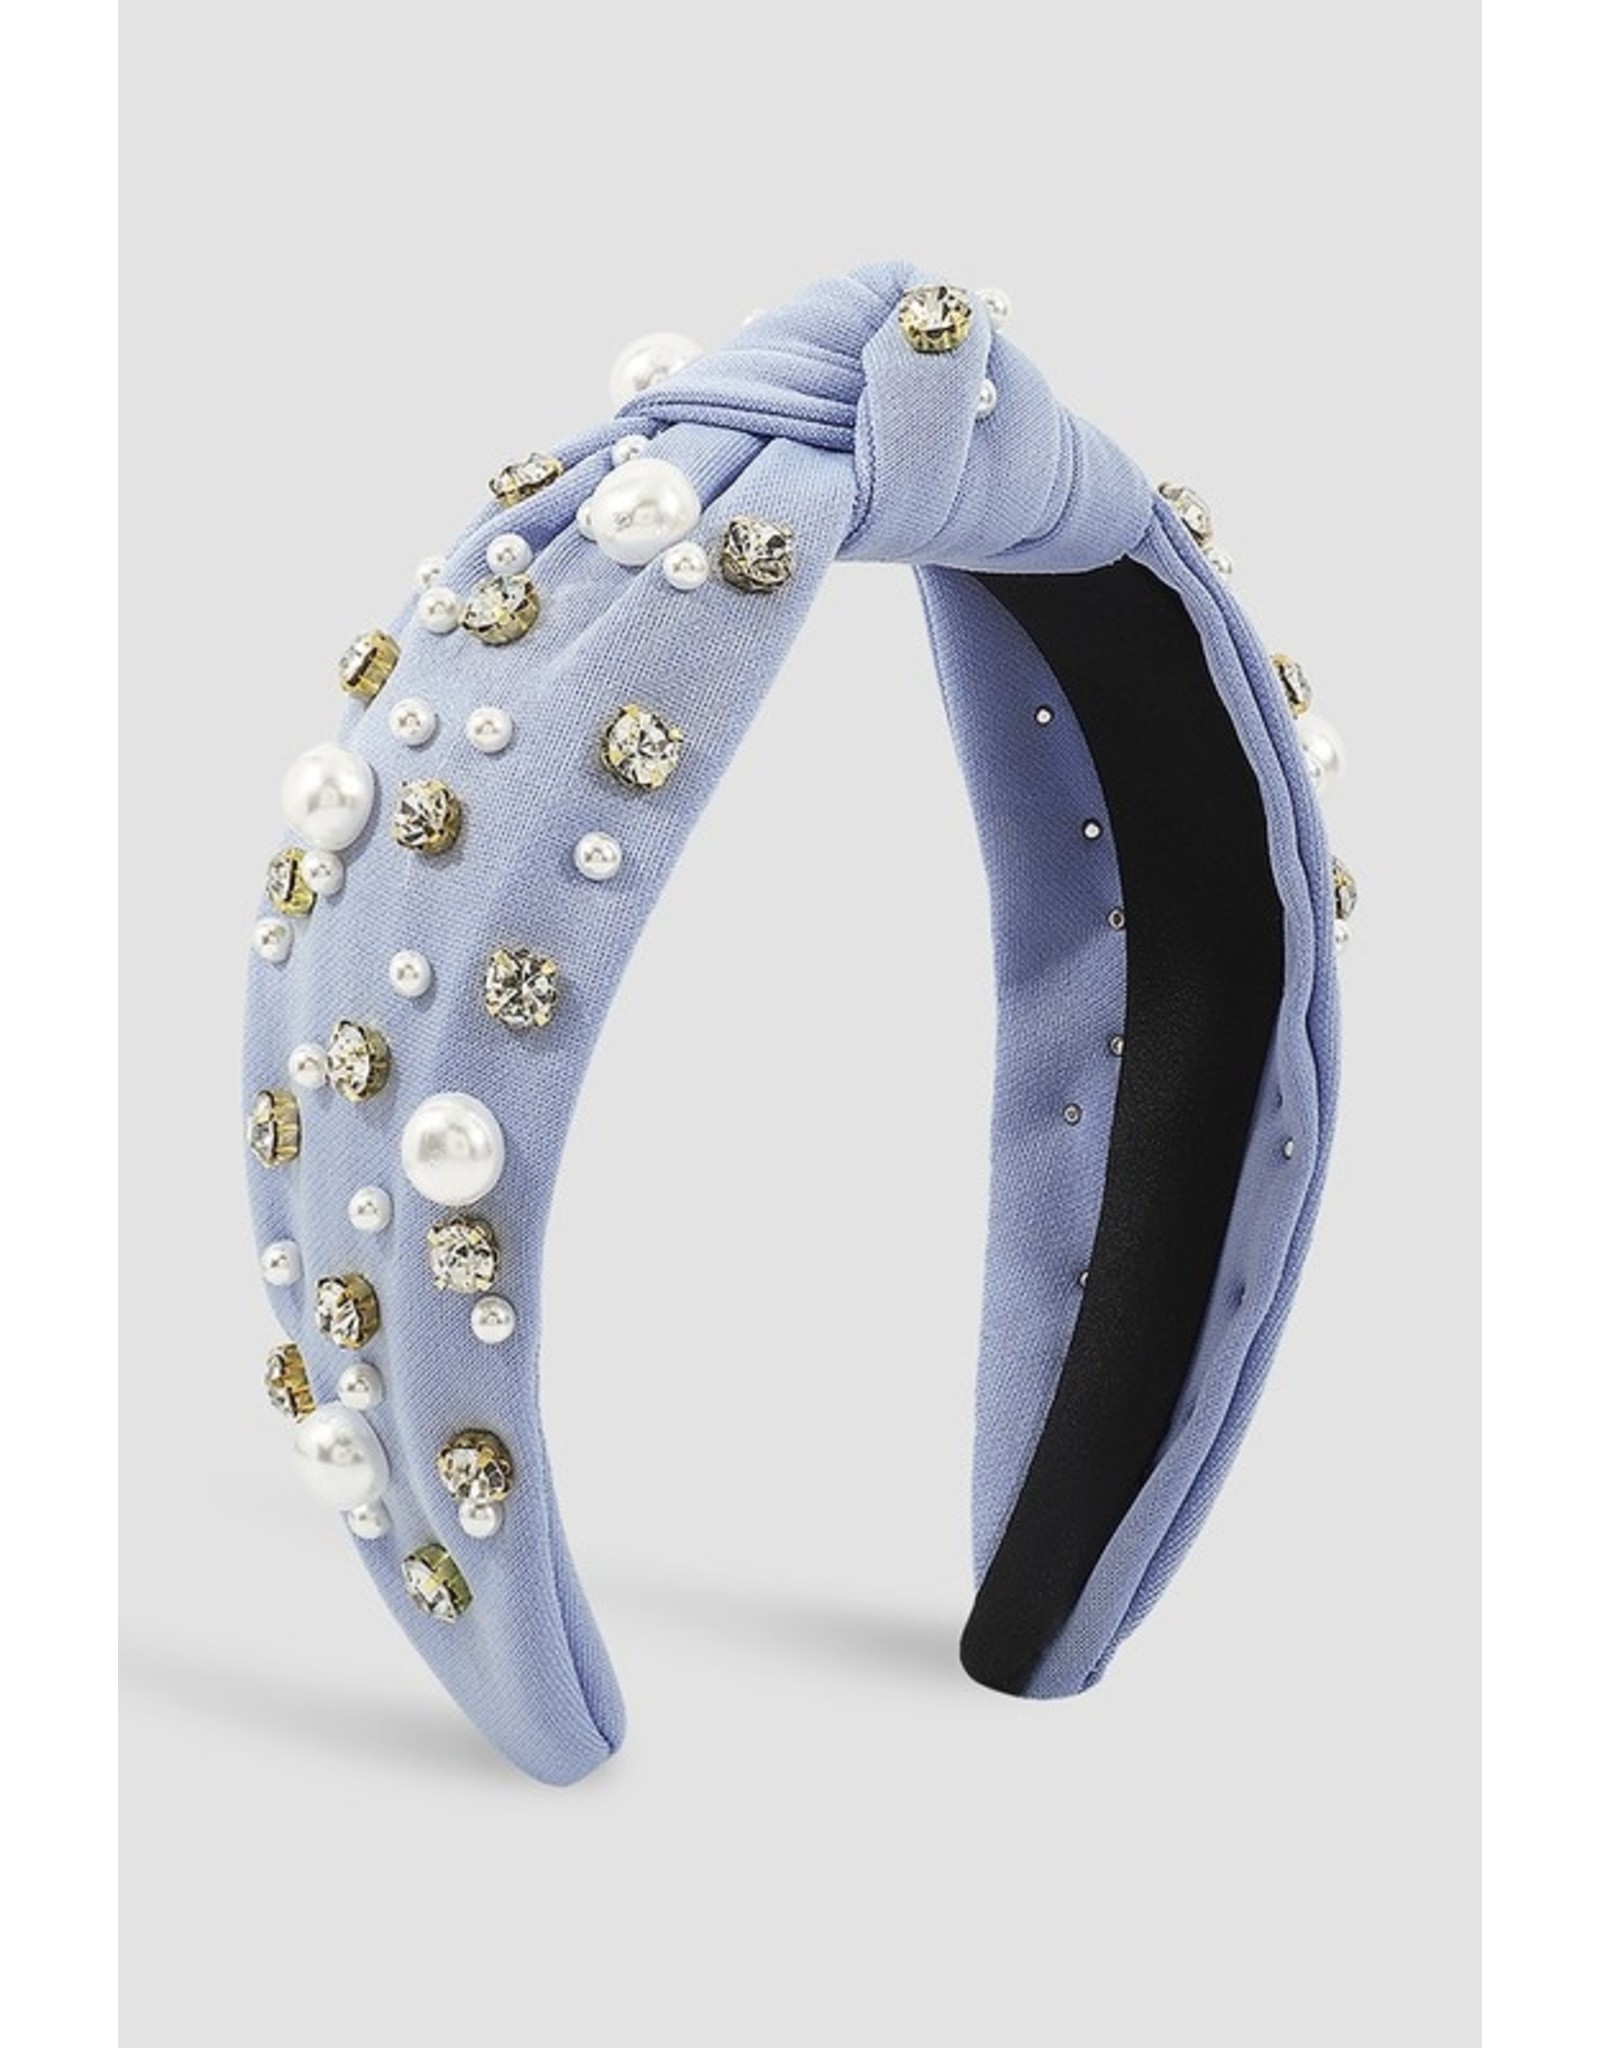 The Ritzy Gypsy Blue Jeweled Headband